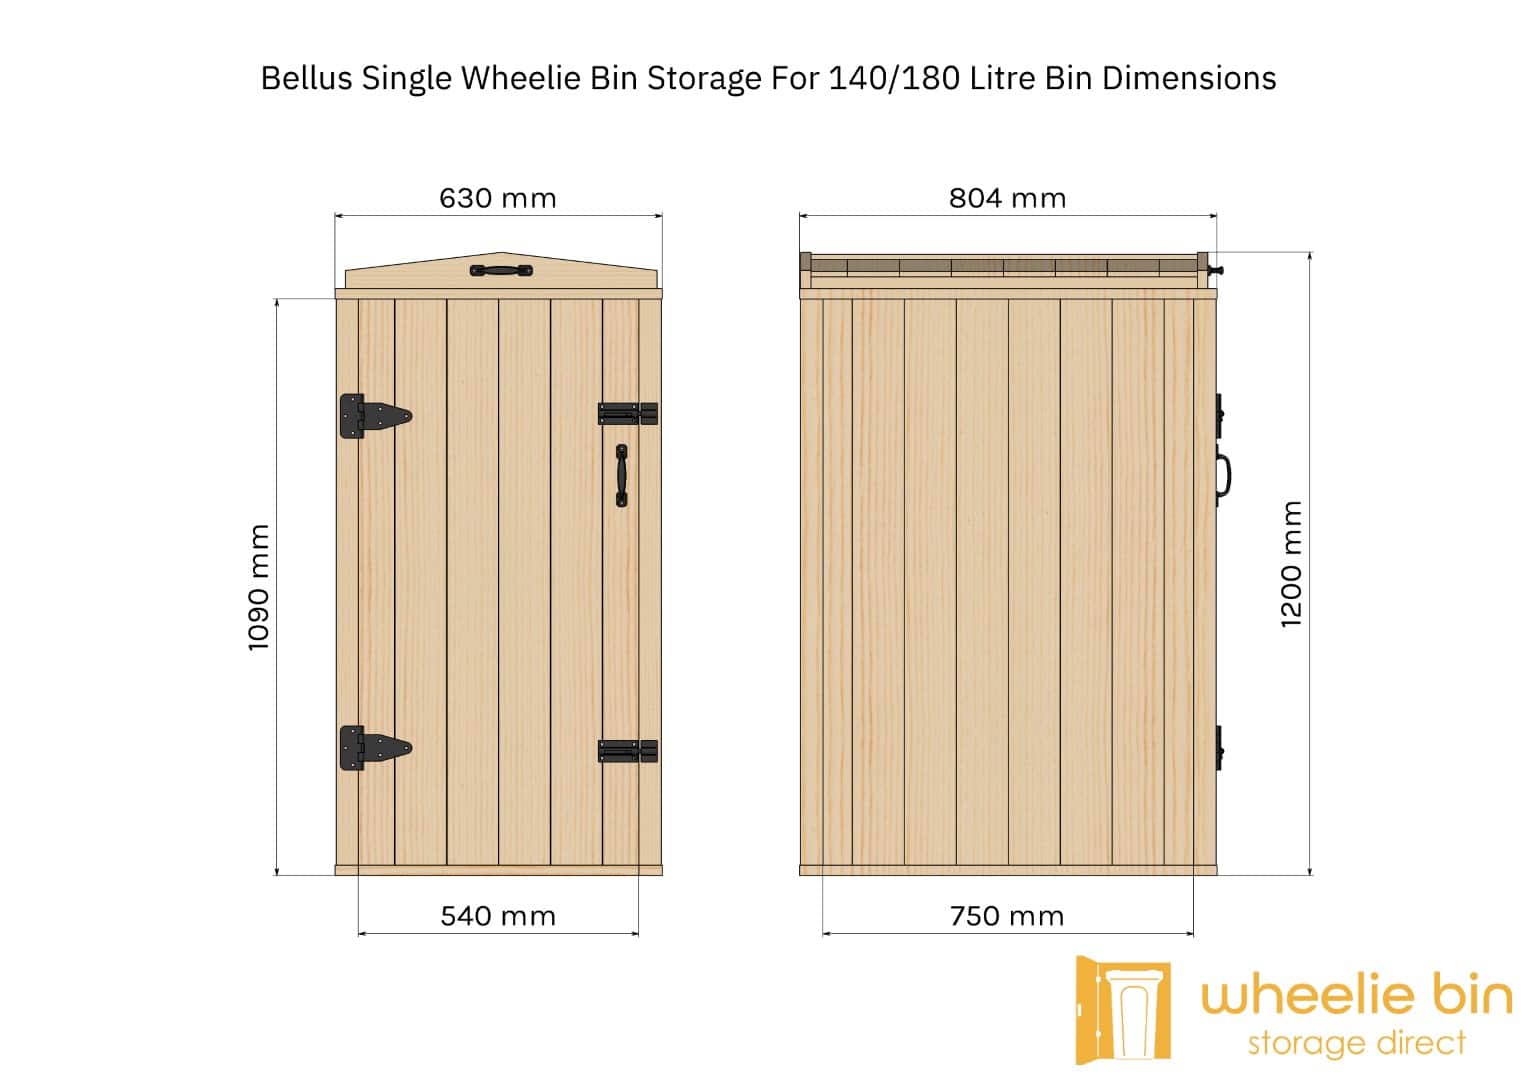 bellus single wheelie bin storage chest